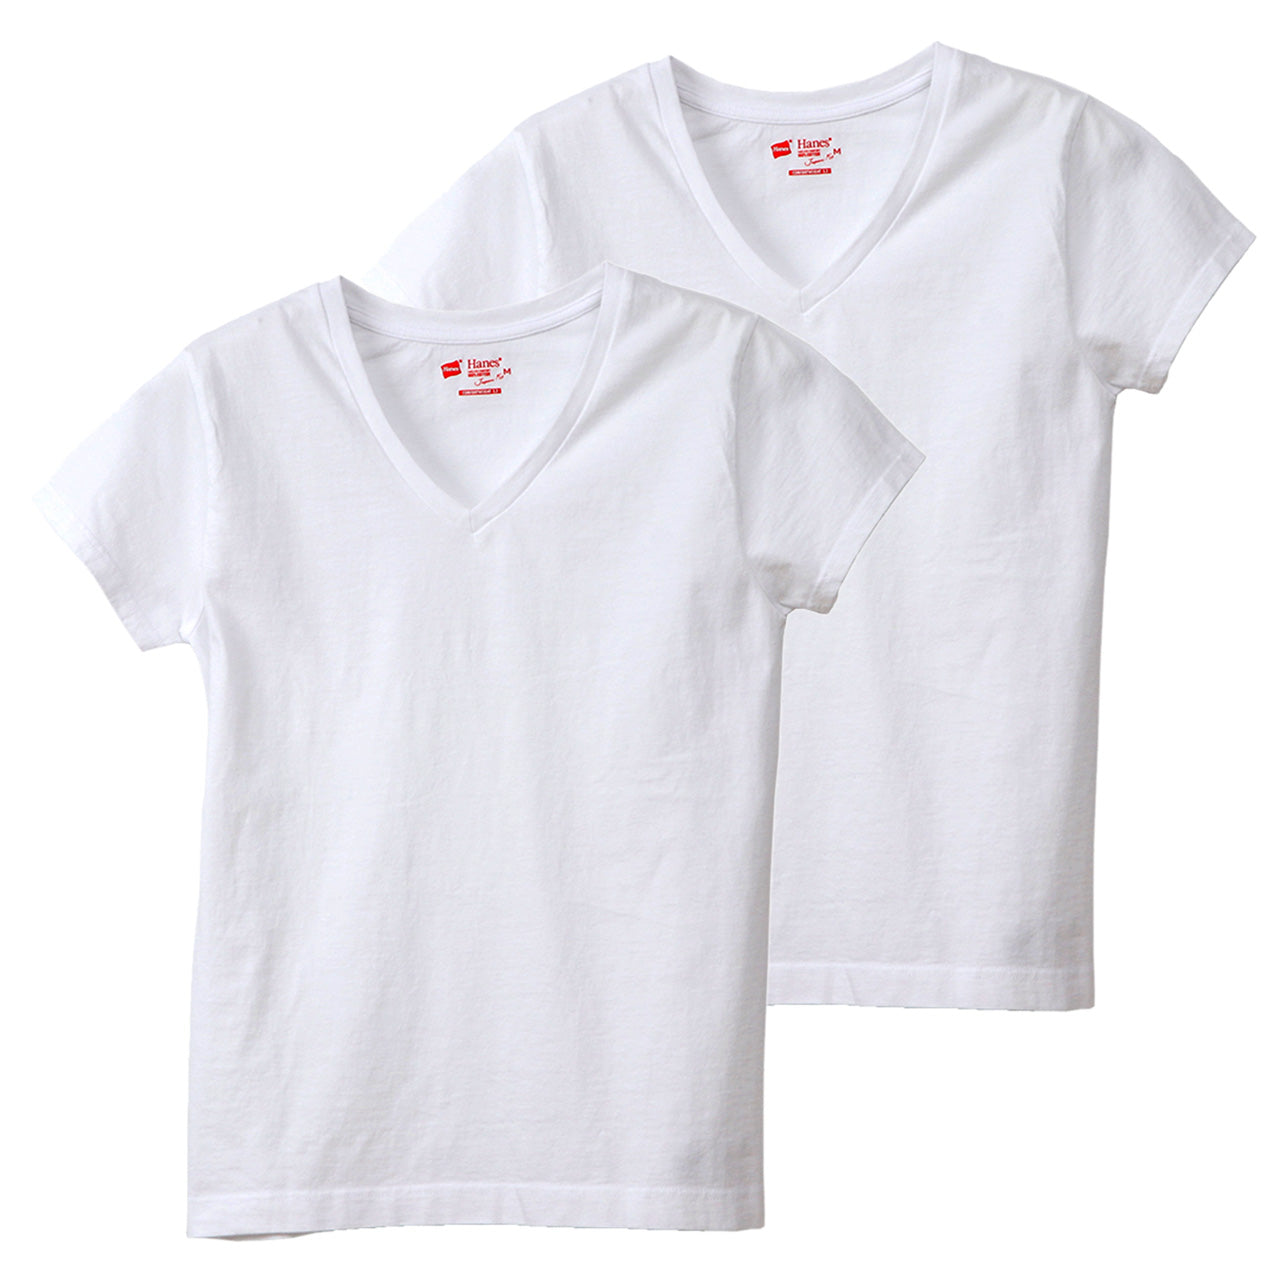 ヘインズ tシャツ レディース vネック 半袖 綿100% ジャパンフィット 2枚組 M・L (Tシャツ 綿 無地 インナー シャツ) (在庫限り)